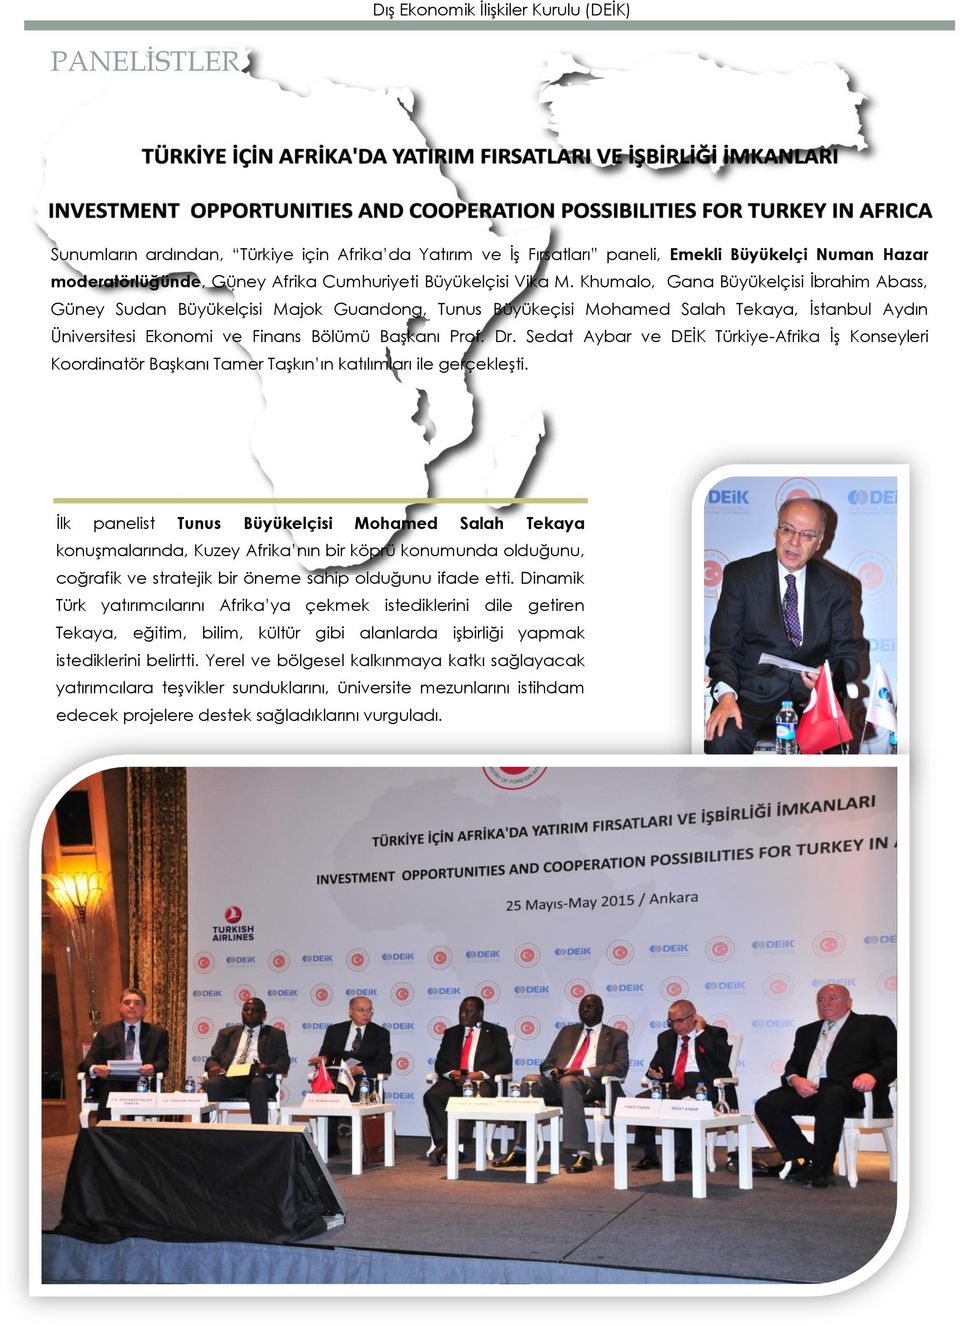 Sedat Aybar ve DEİK Türkiye-Afrika İş Konseyleri Koordinatör Başkanı Tamer Taşkın ın katılımları ile gerçekleşti.